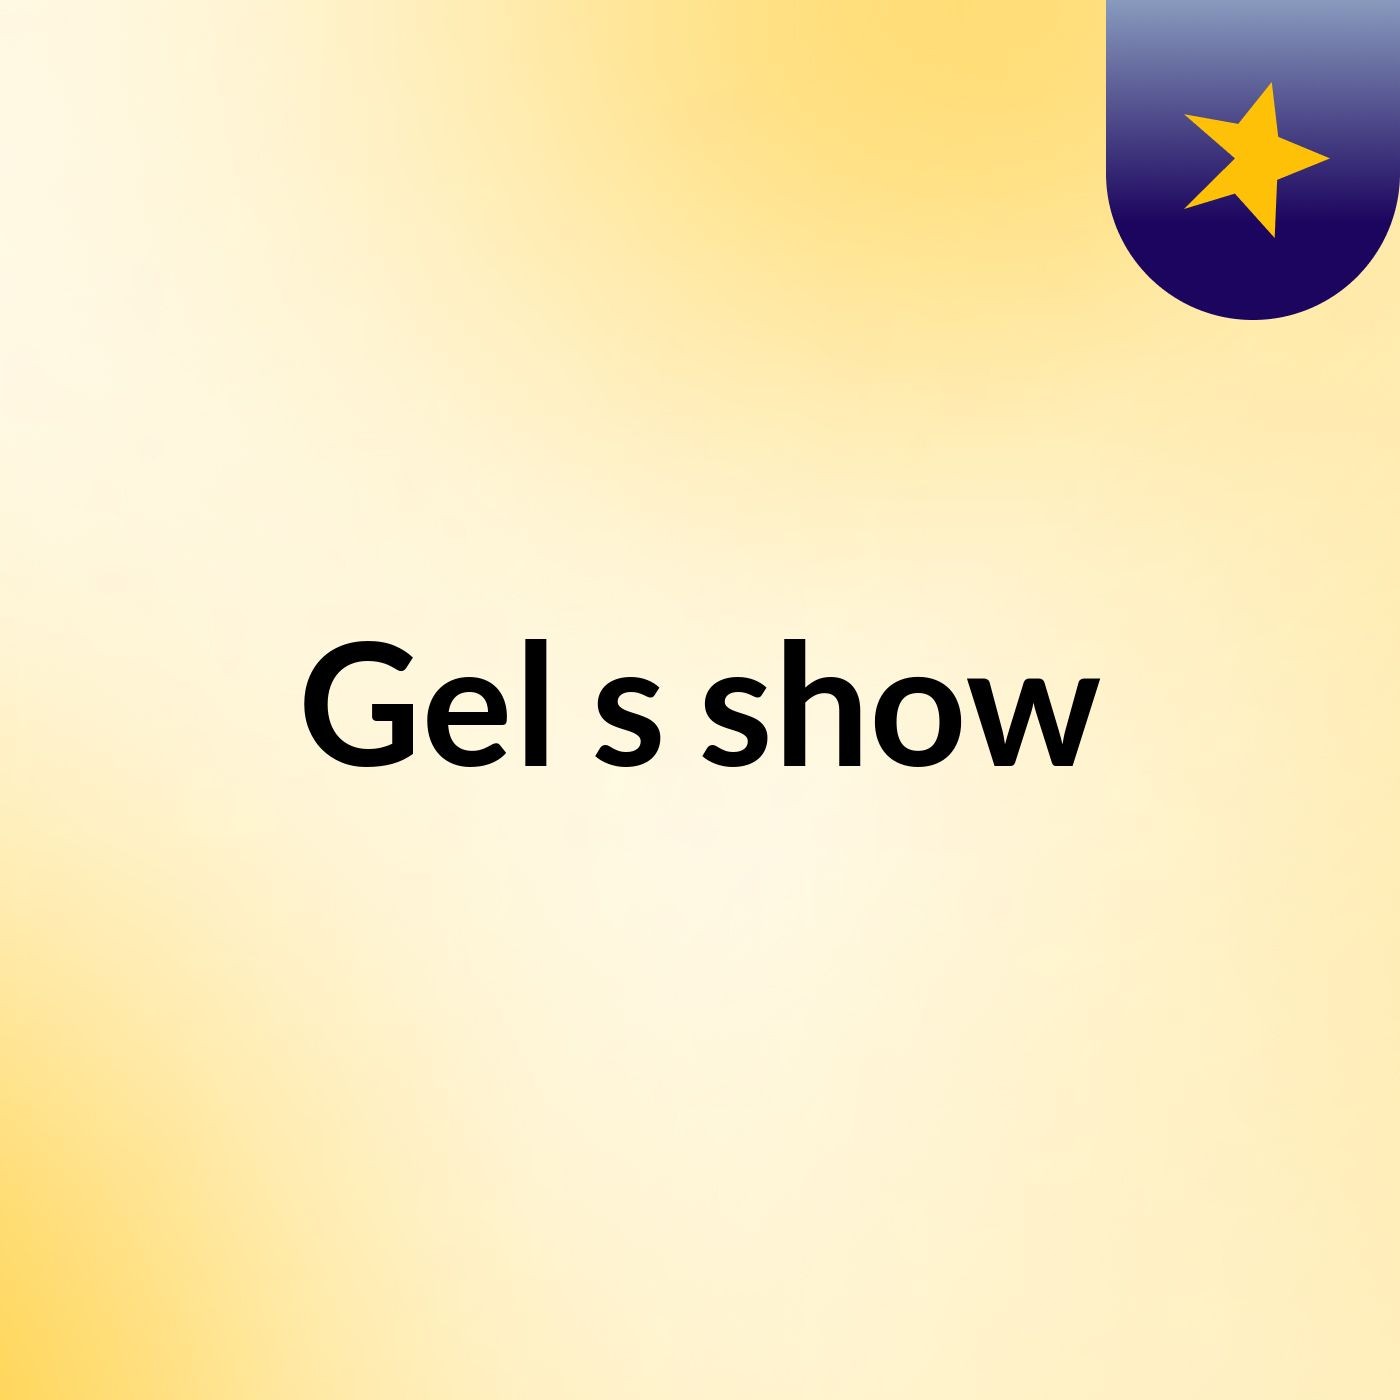 Gel's show